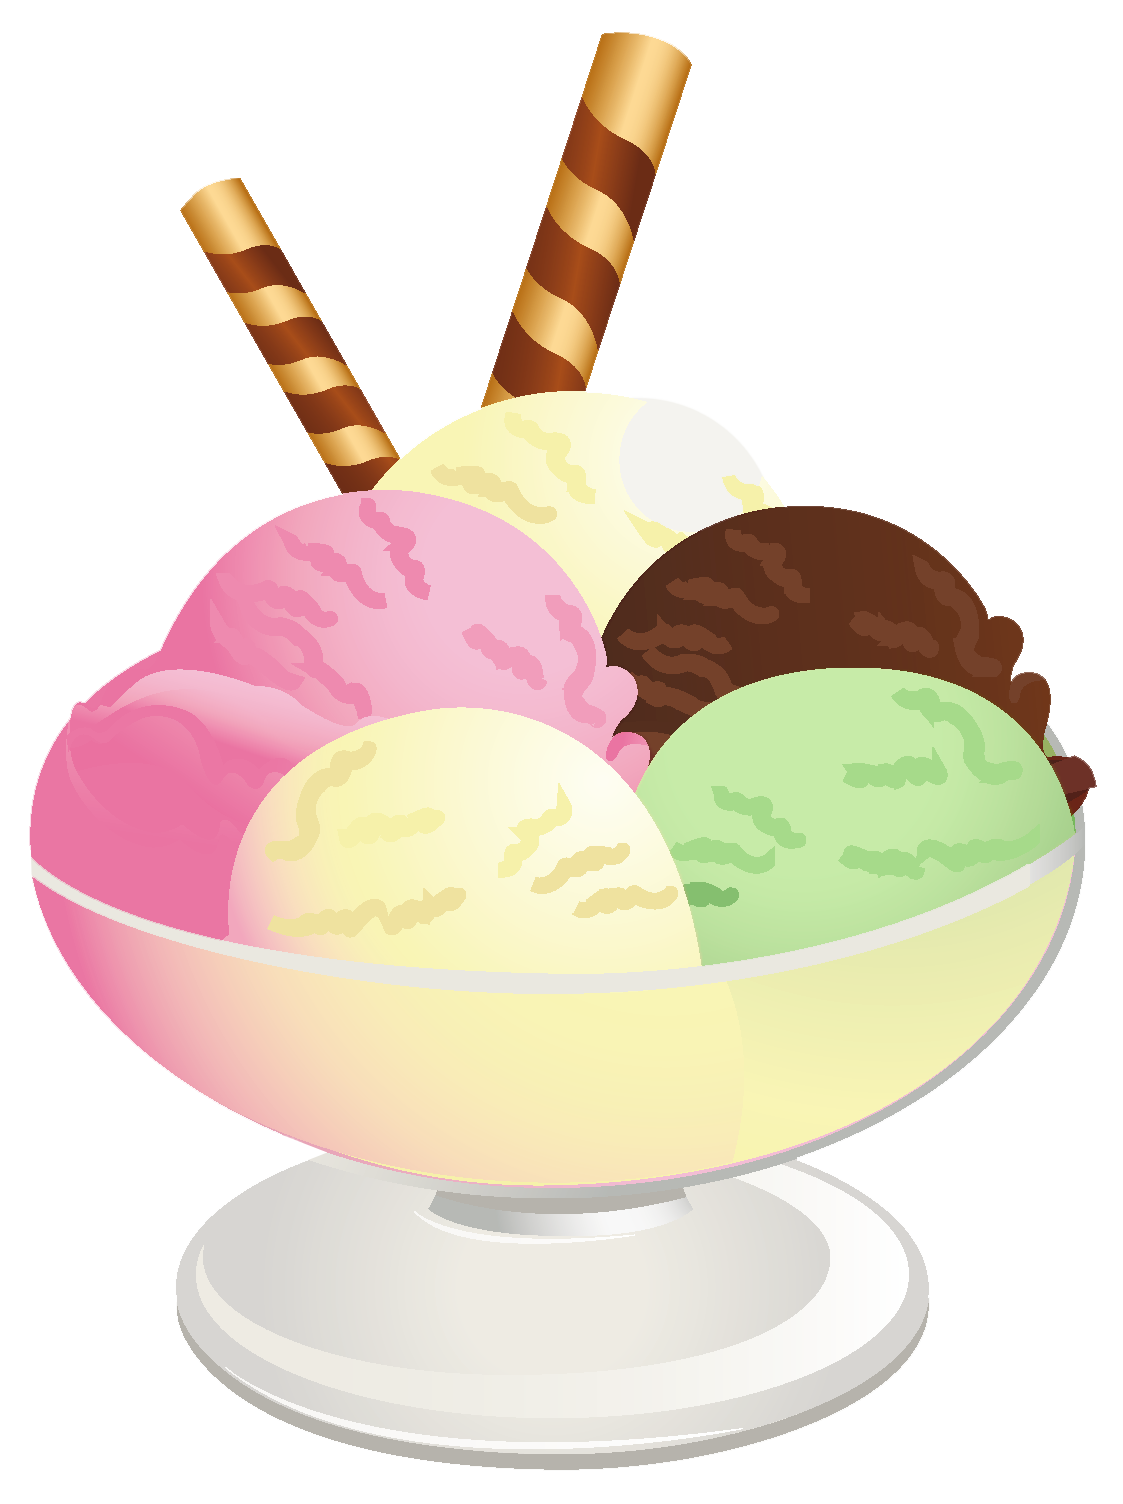 Ice cream sundae picture clipart